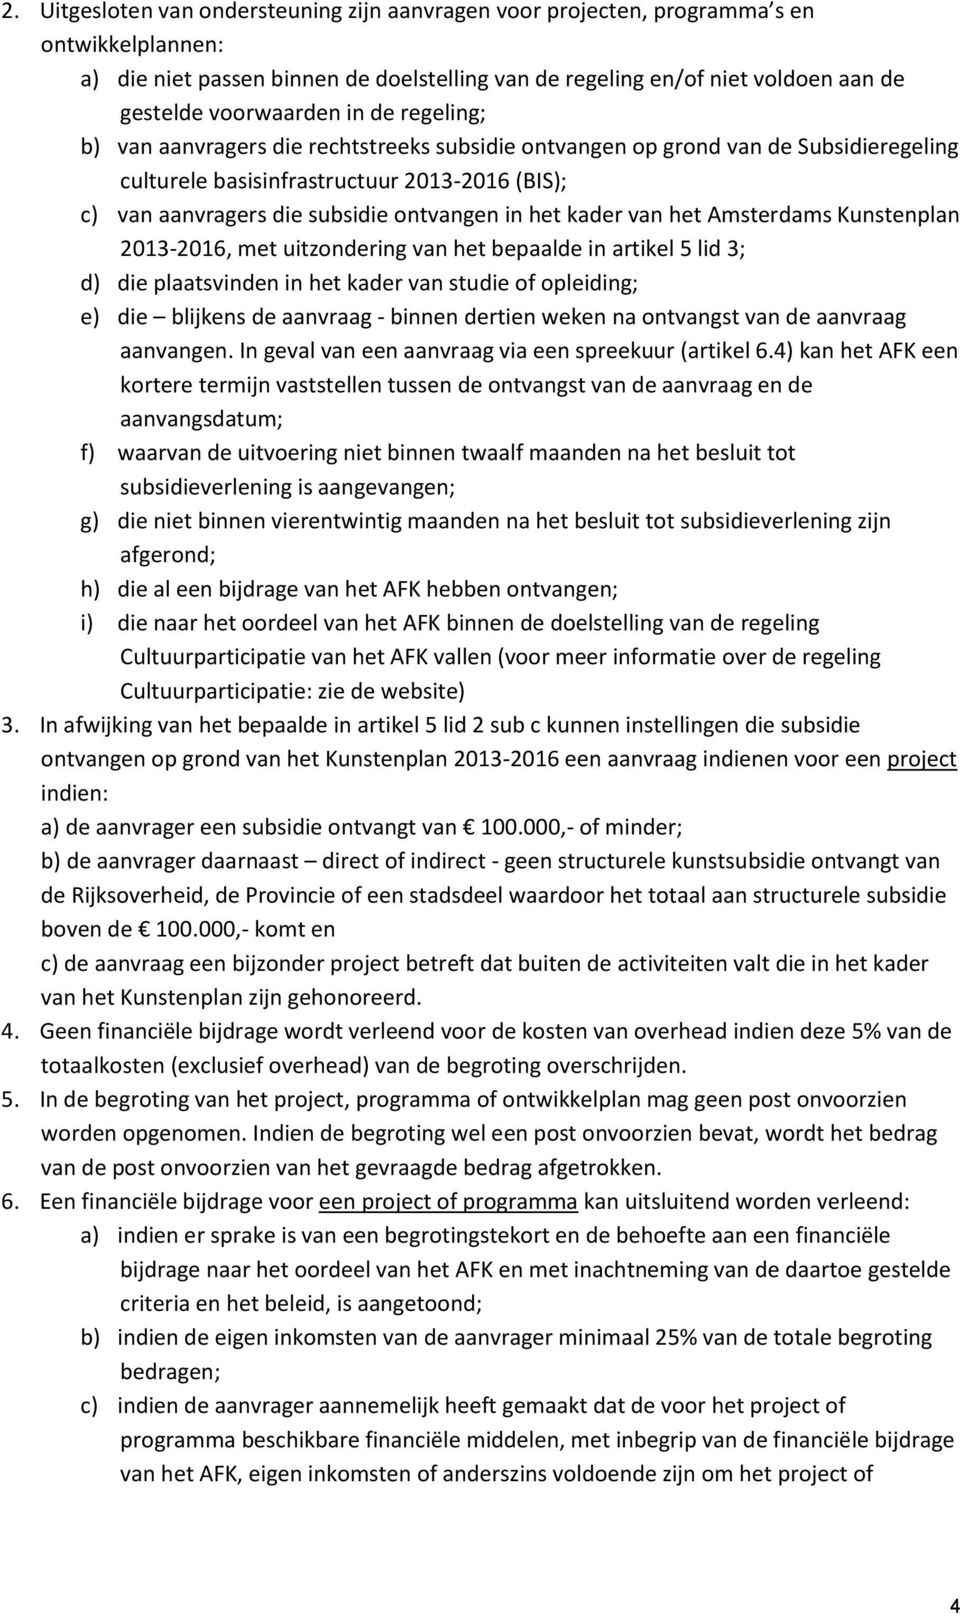 ontvangen in het kader van het Amsterdams Kunstenplan 2013-2016, met uitzondering van het bepaalde in artikel 5 lid 3; d) die plaatsvinden in het kader van studie of opleiding; e) die blijkens de